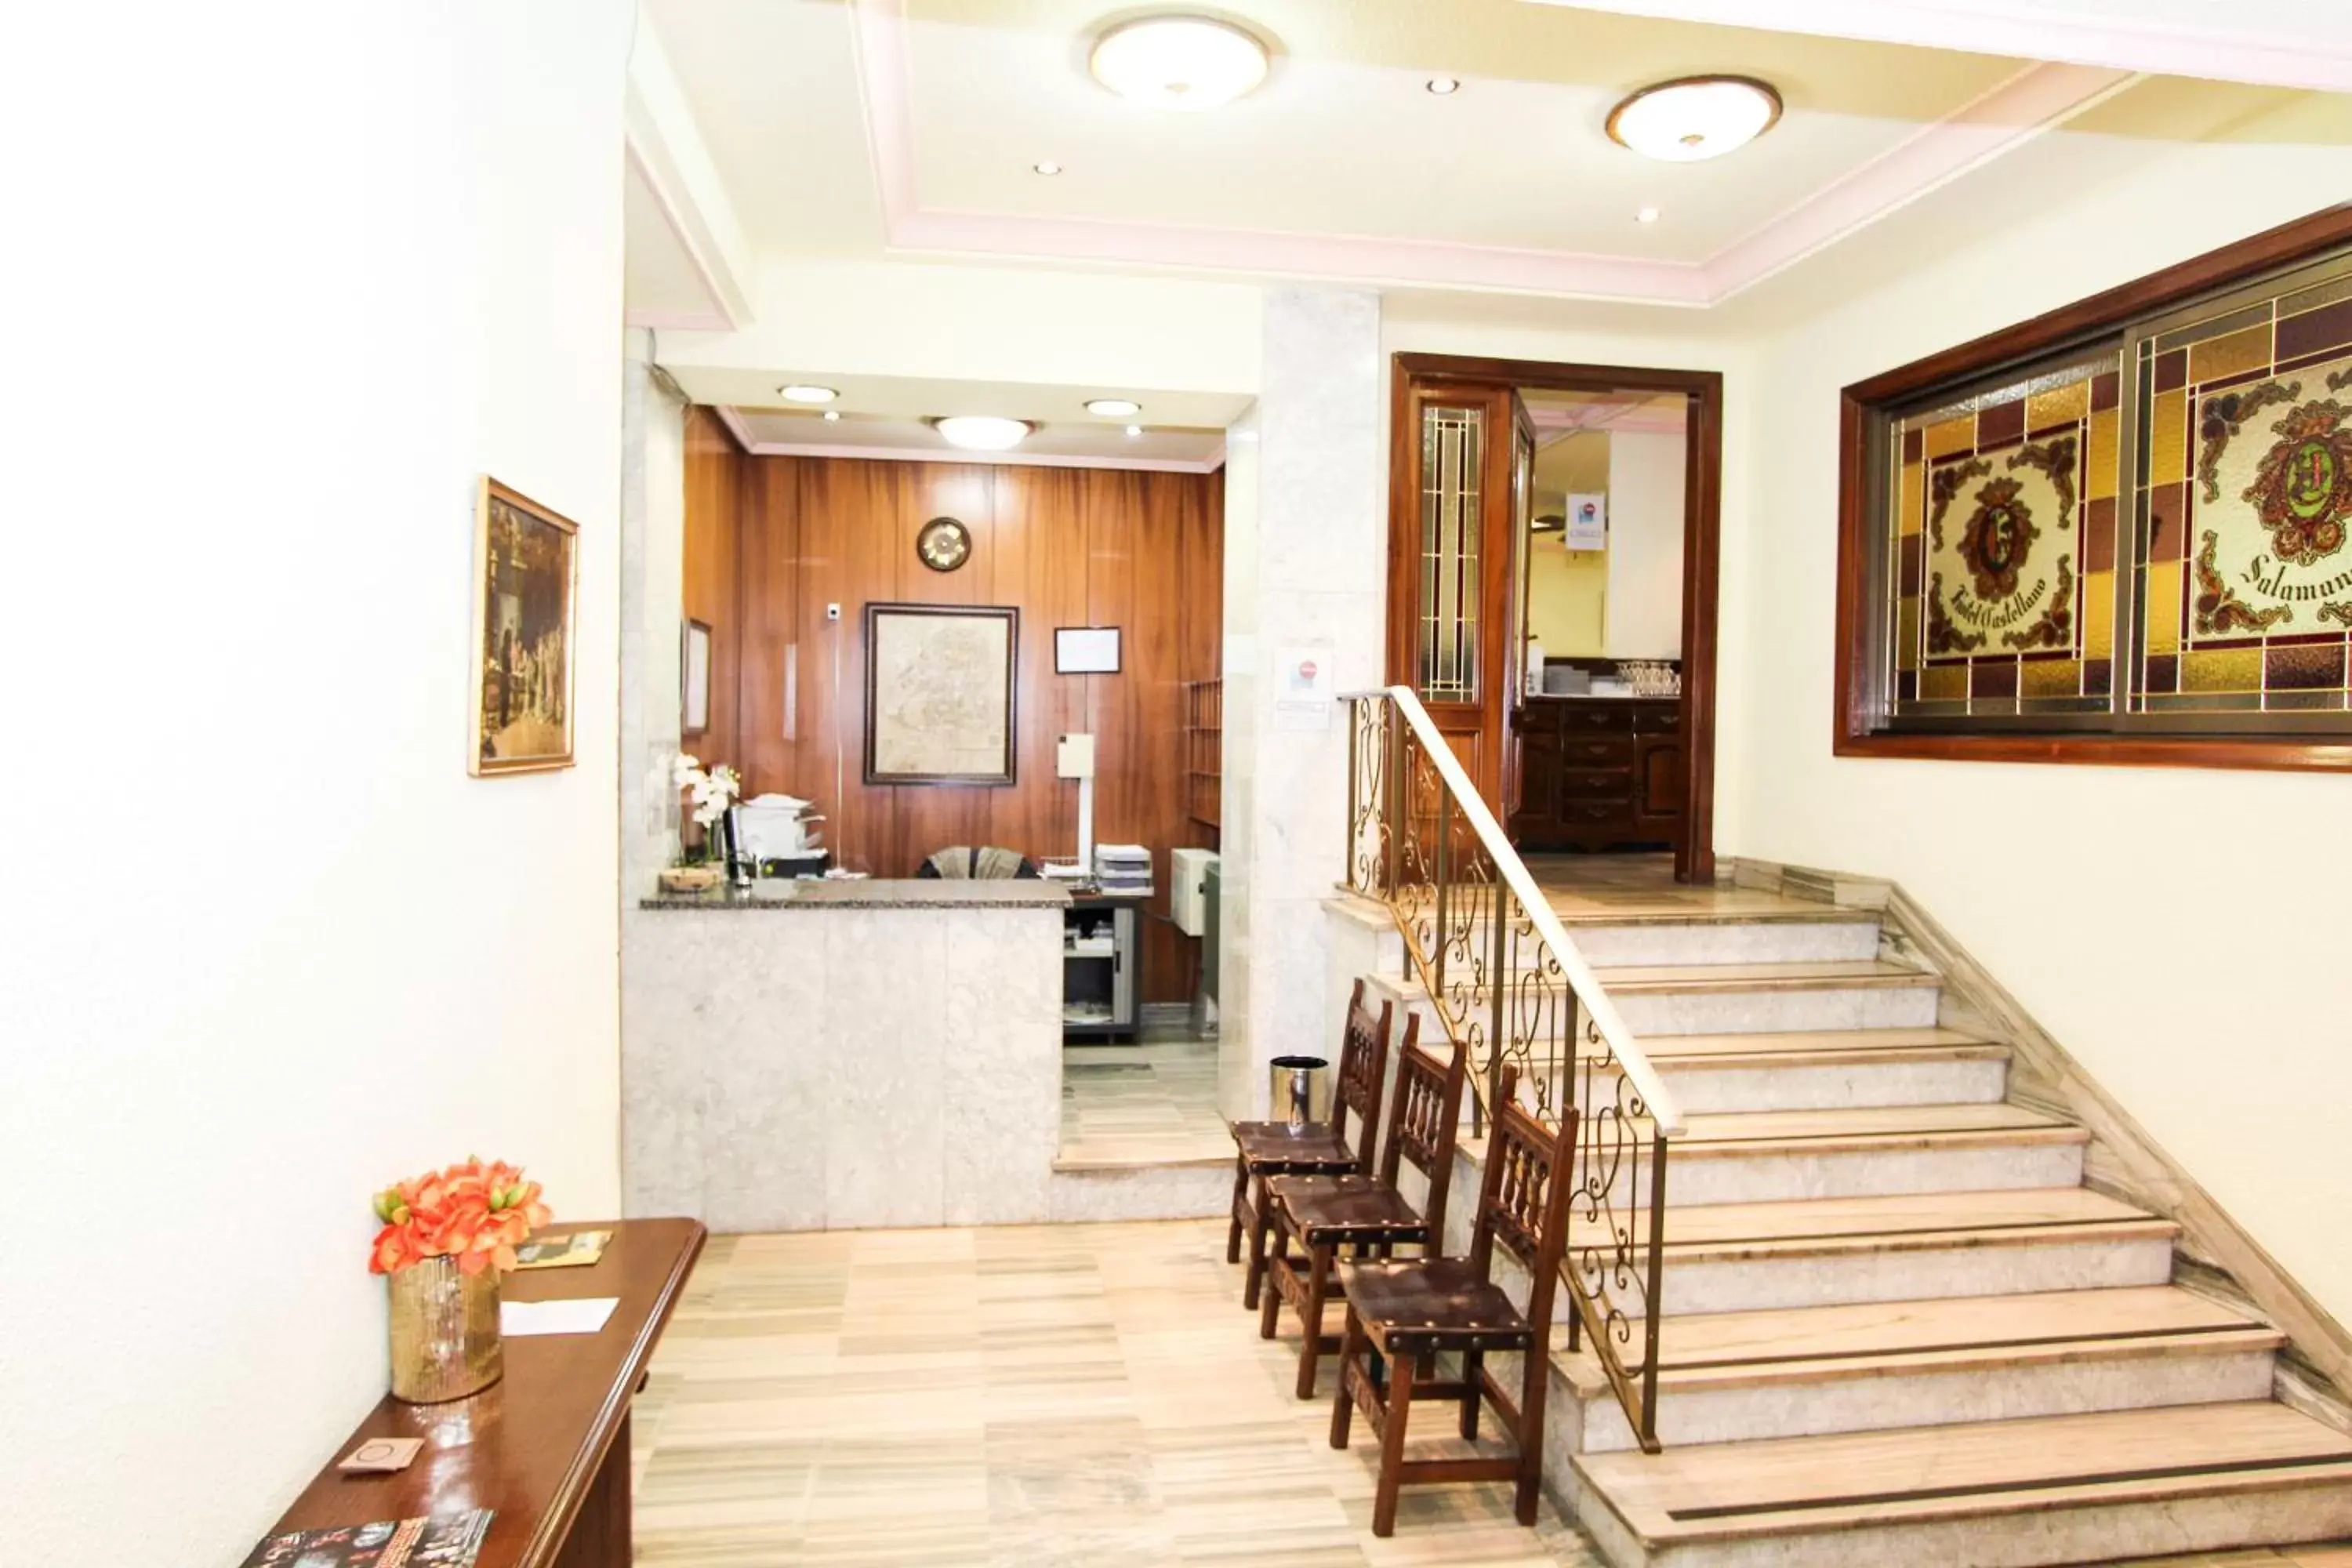 Lobby or reception in Hotel Castellano Centro